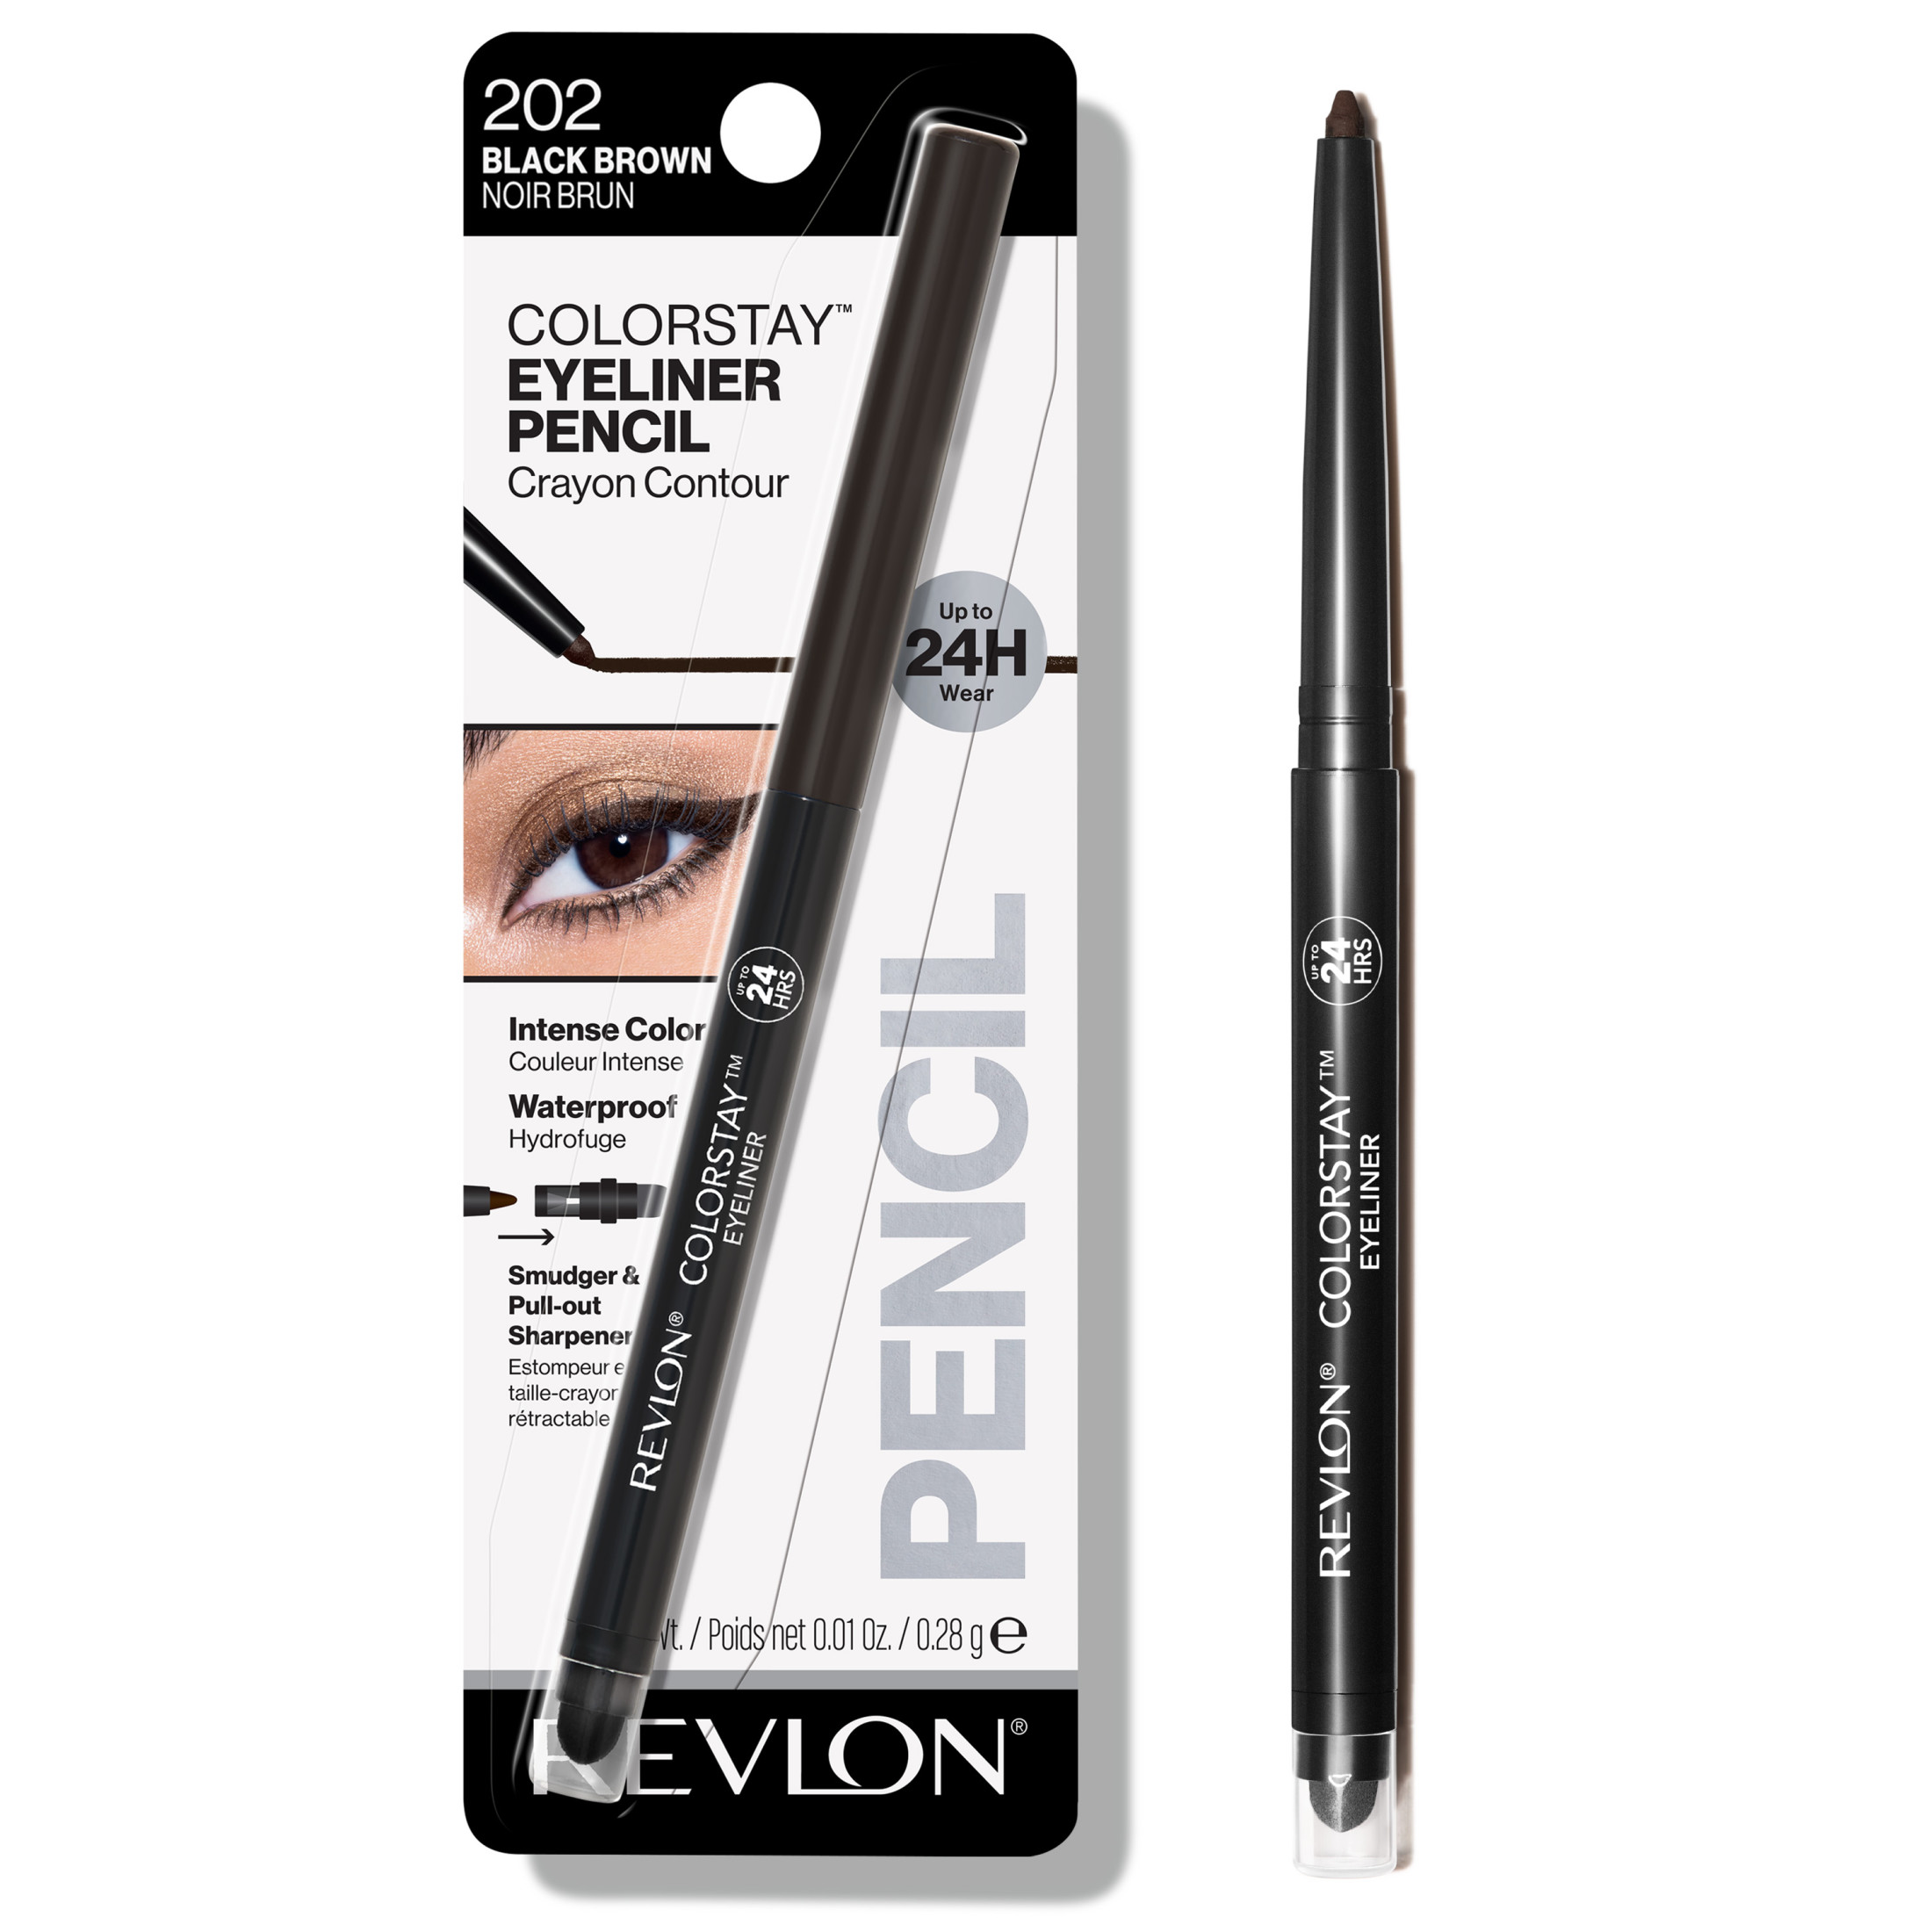 Revlon ColorStay Waterproof Eyeliner Pencil, 24HR Wear, Built-in Sharpener, 202 Black Brown, 0.01 oz - image 1 of 9